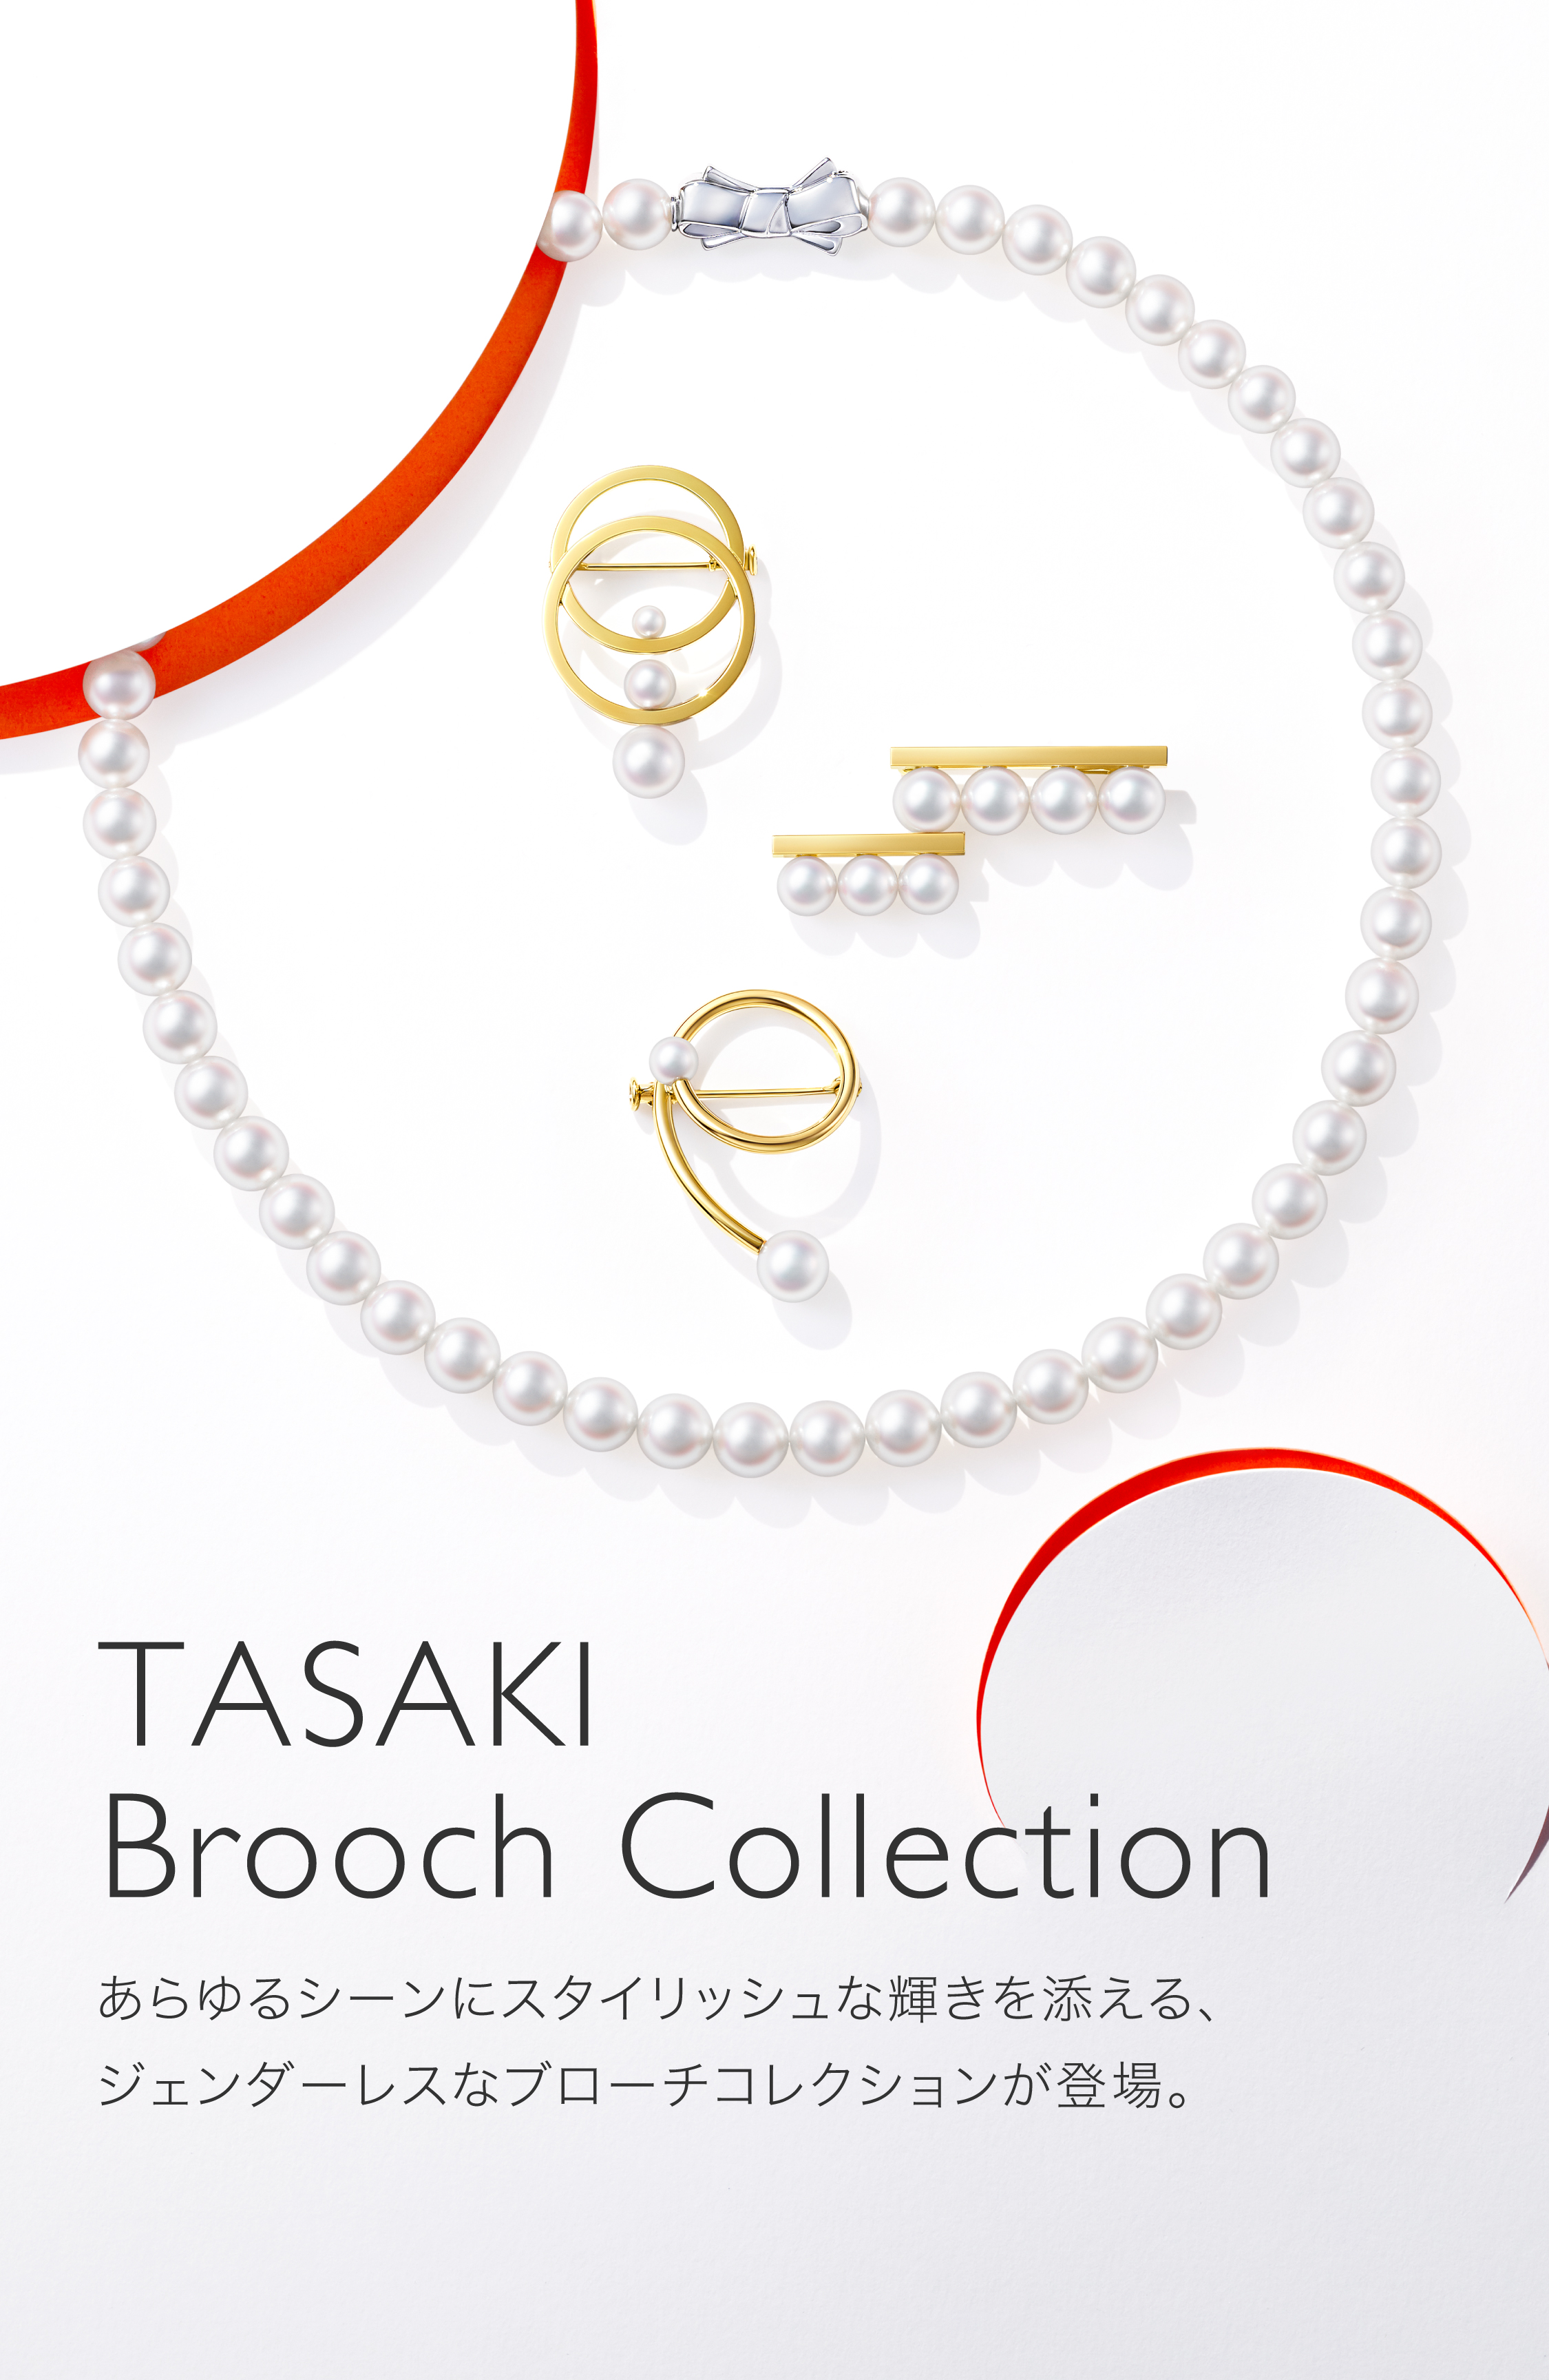 TASAKI(タサキ) 公式サイト | オンラインストア